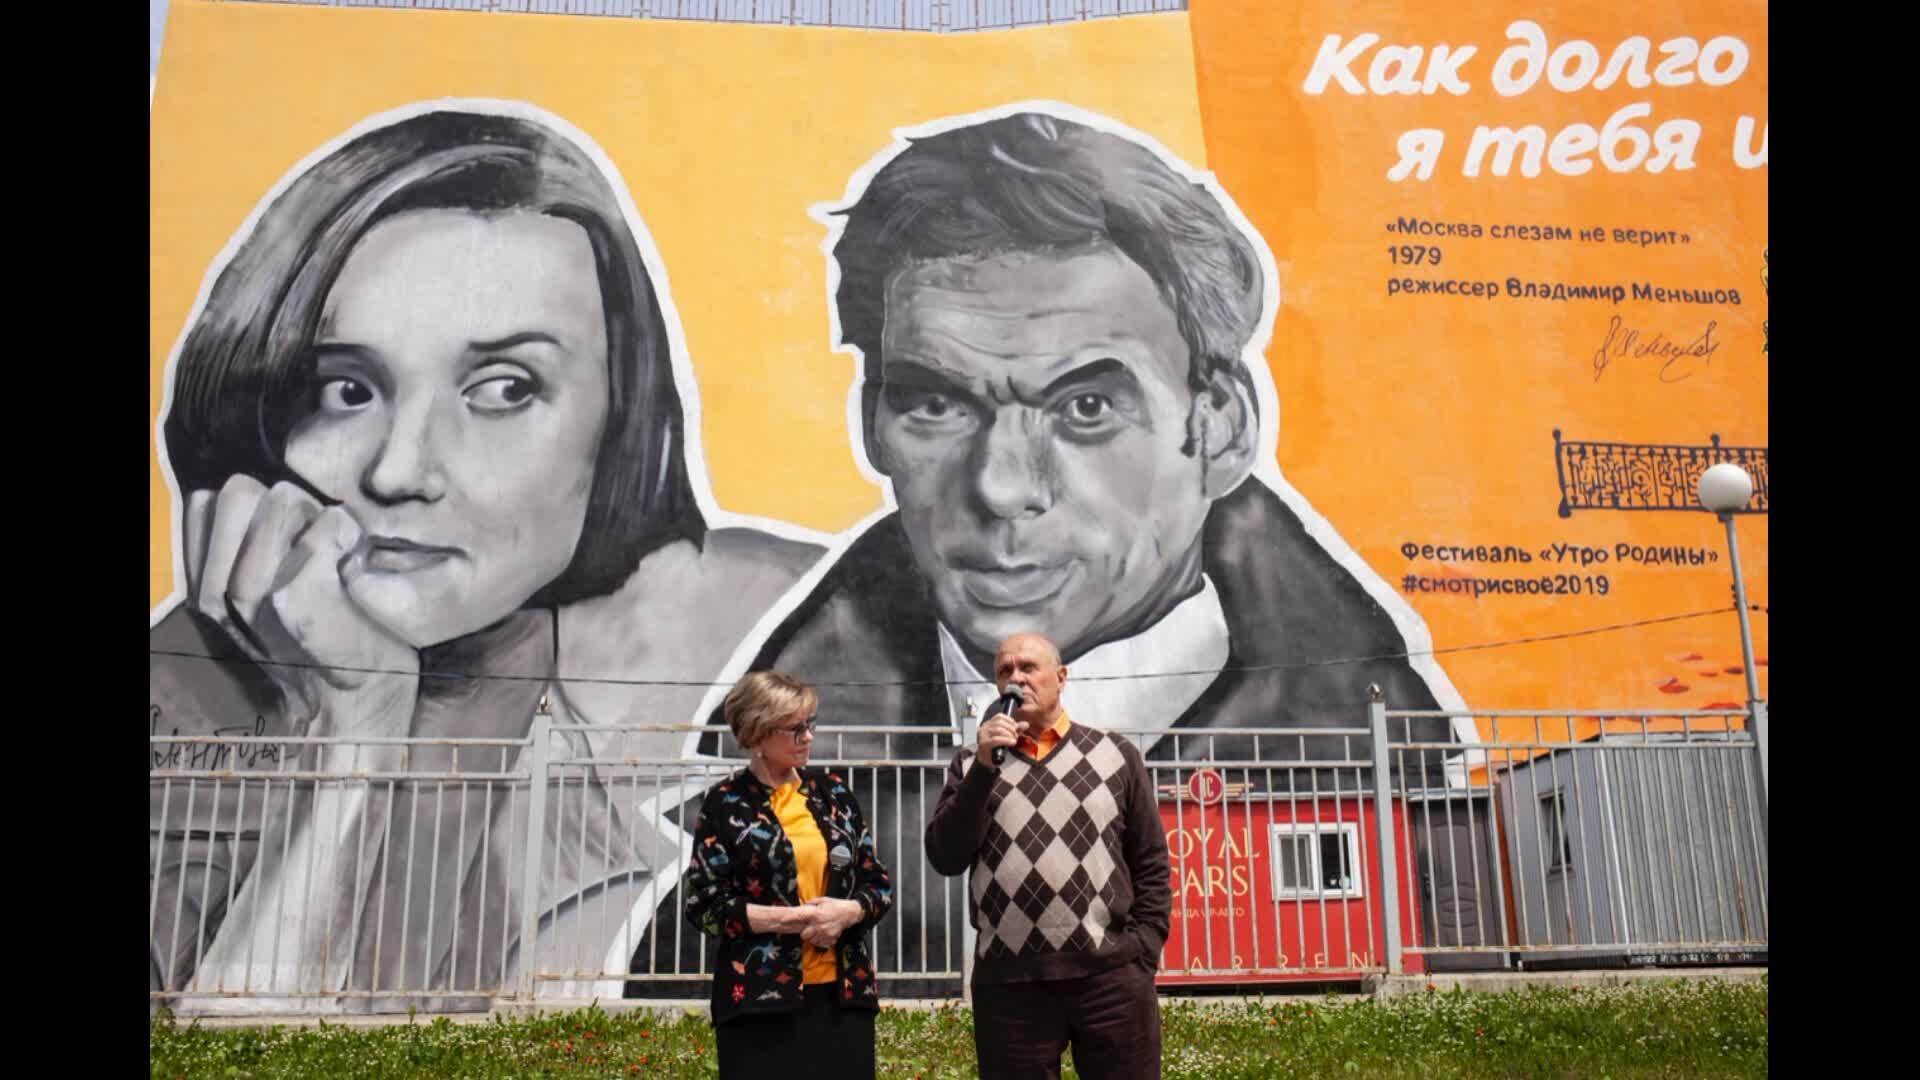 Москва слезам не верит реклама на домашнем. Граффити Москва слезам не верит Южно Сахалинск.